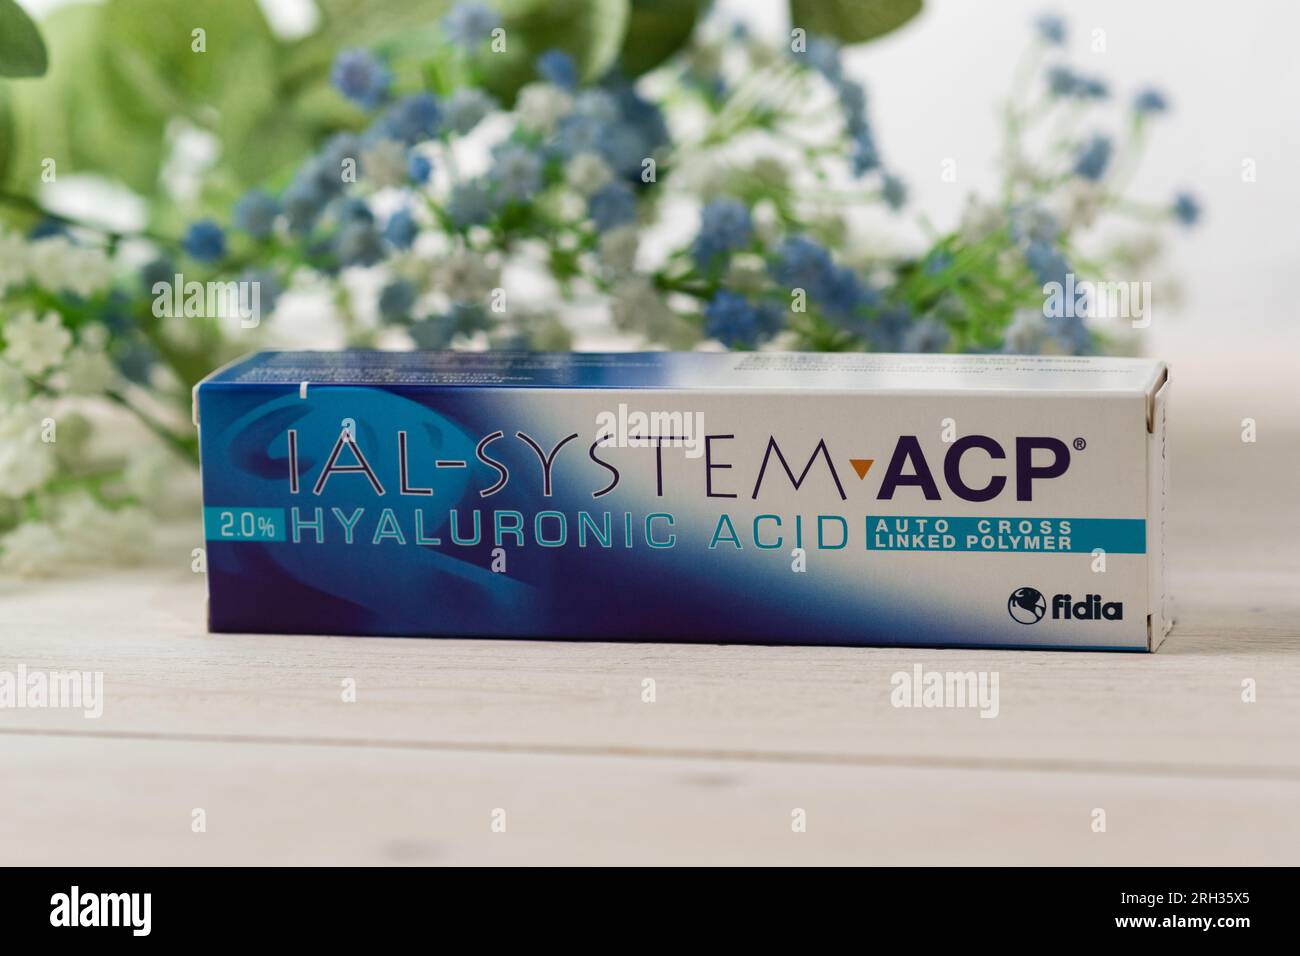 Russia, Krasnodar - 22 novembre 2022: Una scatola di preparazione cosmetica IAL-System ACP si erge su un tavolo di legno bianco con fiori blu Foto Stock